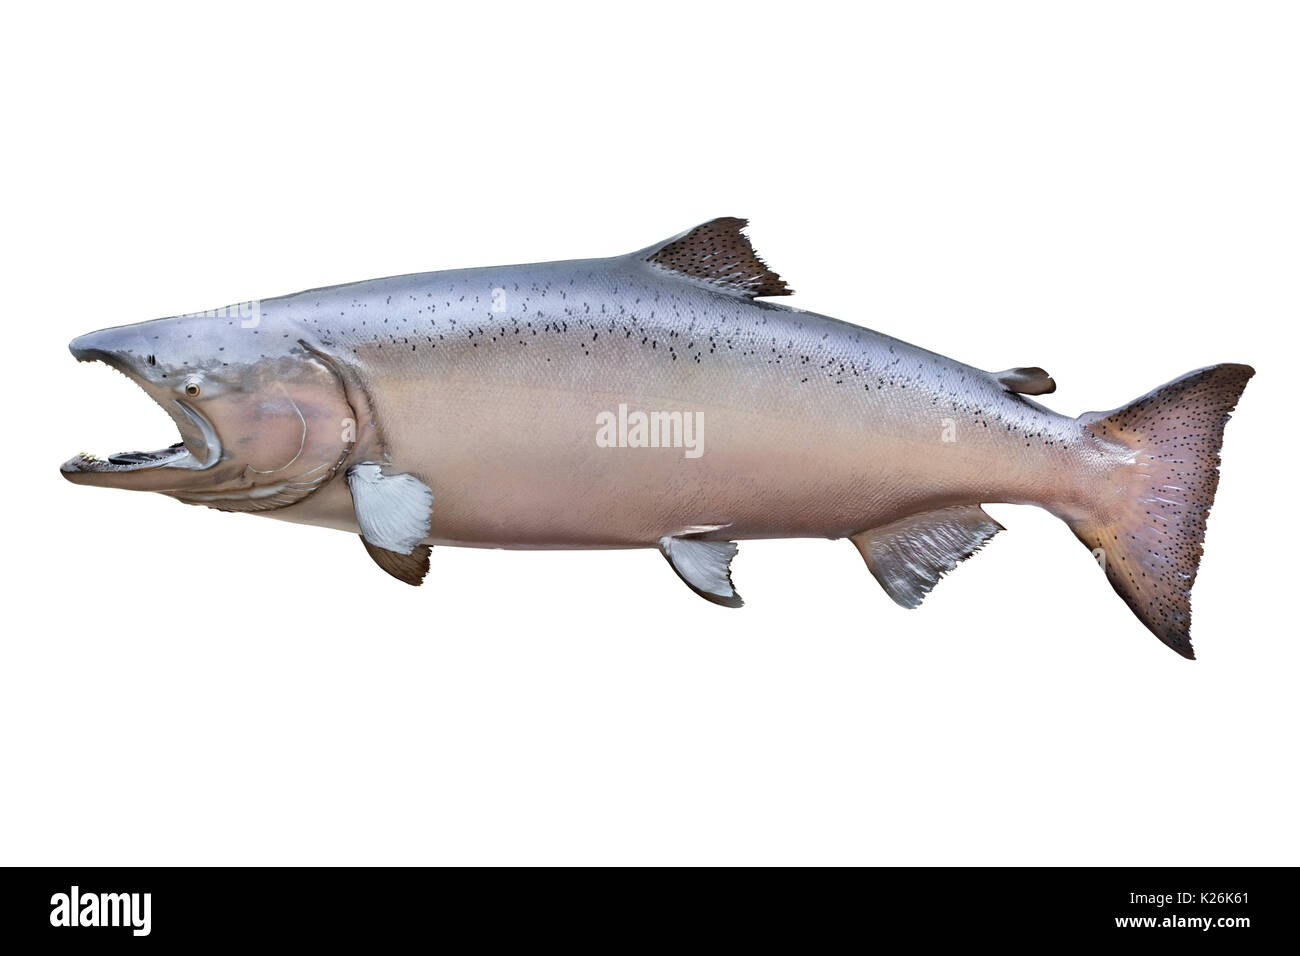 Große männliche König (Chinook) Lachs aus Alaska isoliert auf Weiss. Er ist in einer Phase der Farbe wie Erröten bekannt. Dieser wog 66 Pfund und gemessen 51 Inc. Stockfoto